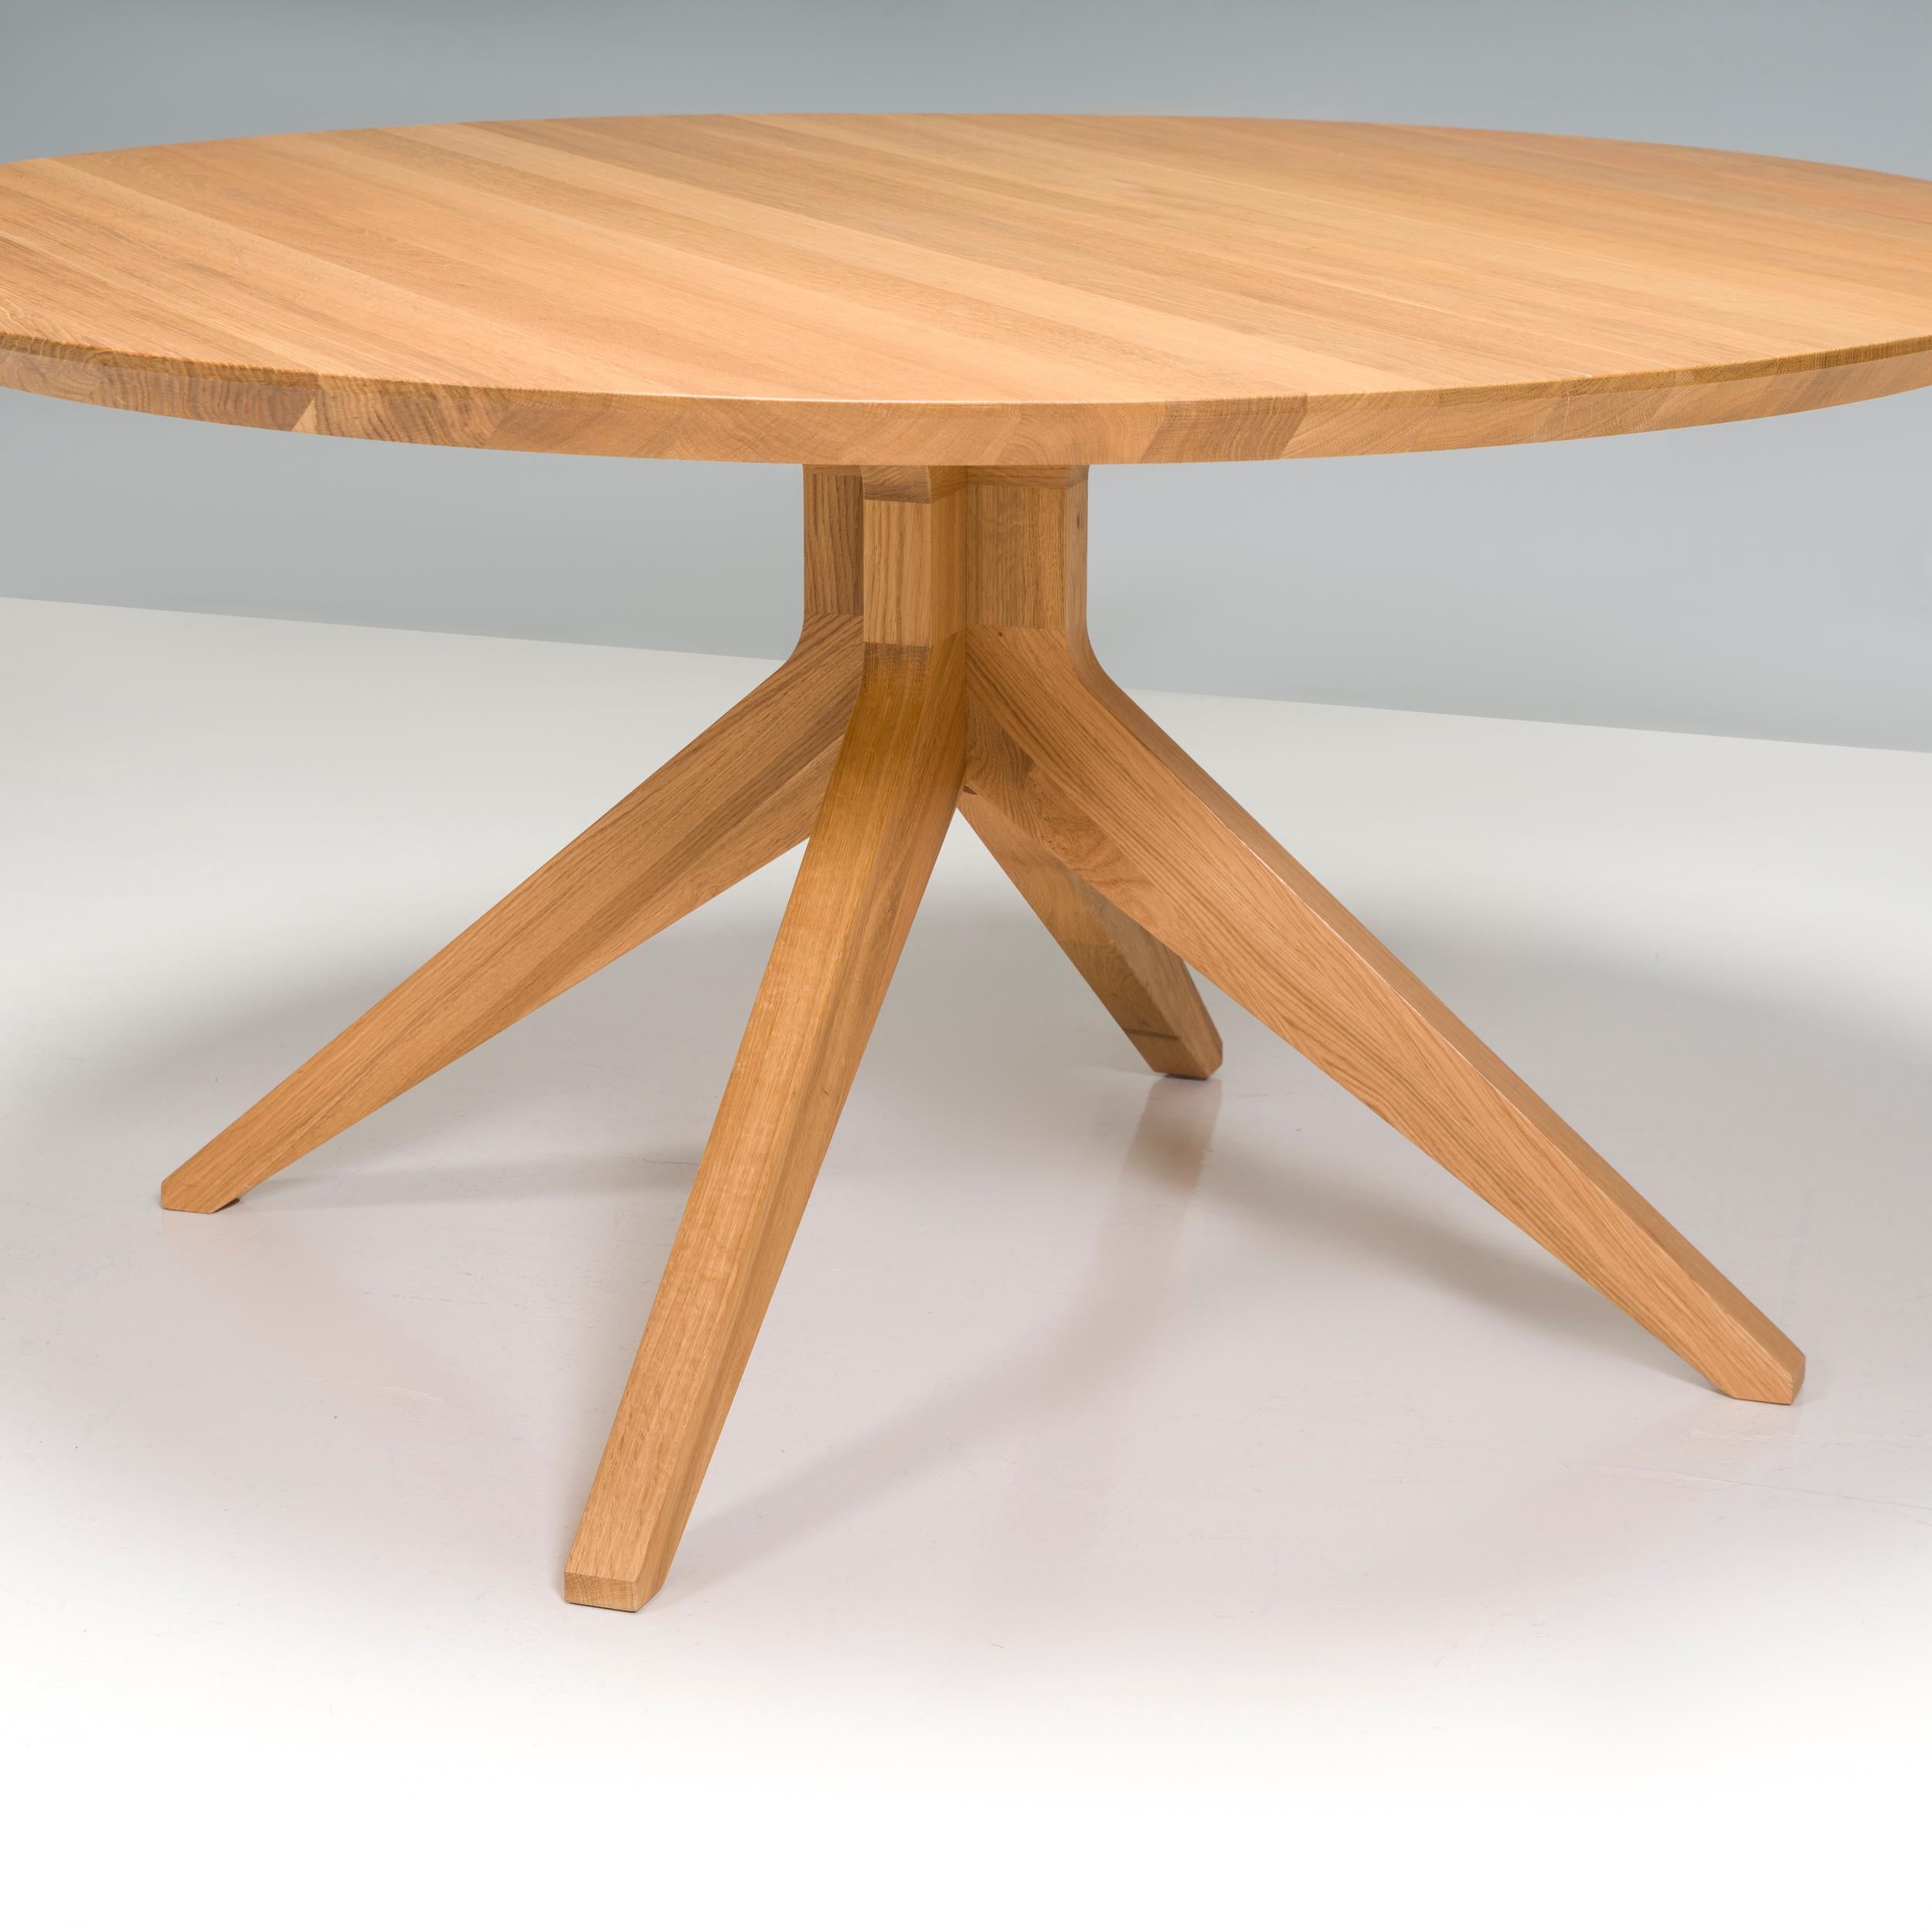 Conçue à l'origine par Matthew Hilton en 2014 et fabriquée par Case furniture depuis, la table à manger Cross est un fantastique exemple de design britannique contemporain.

Fabriquée en Lituanie à partir de chêne massif, la table de salle à manger